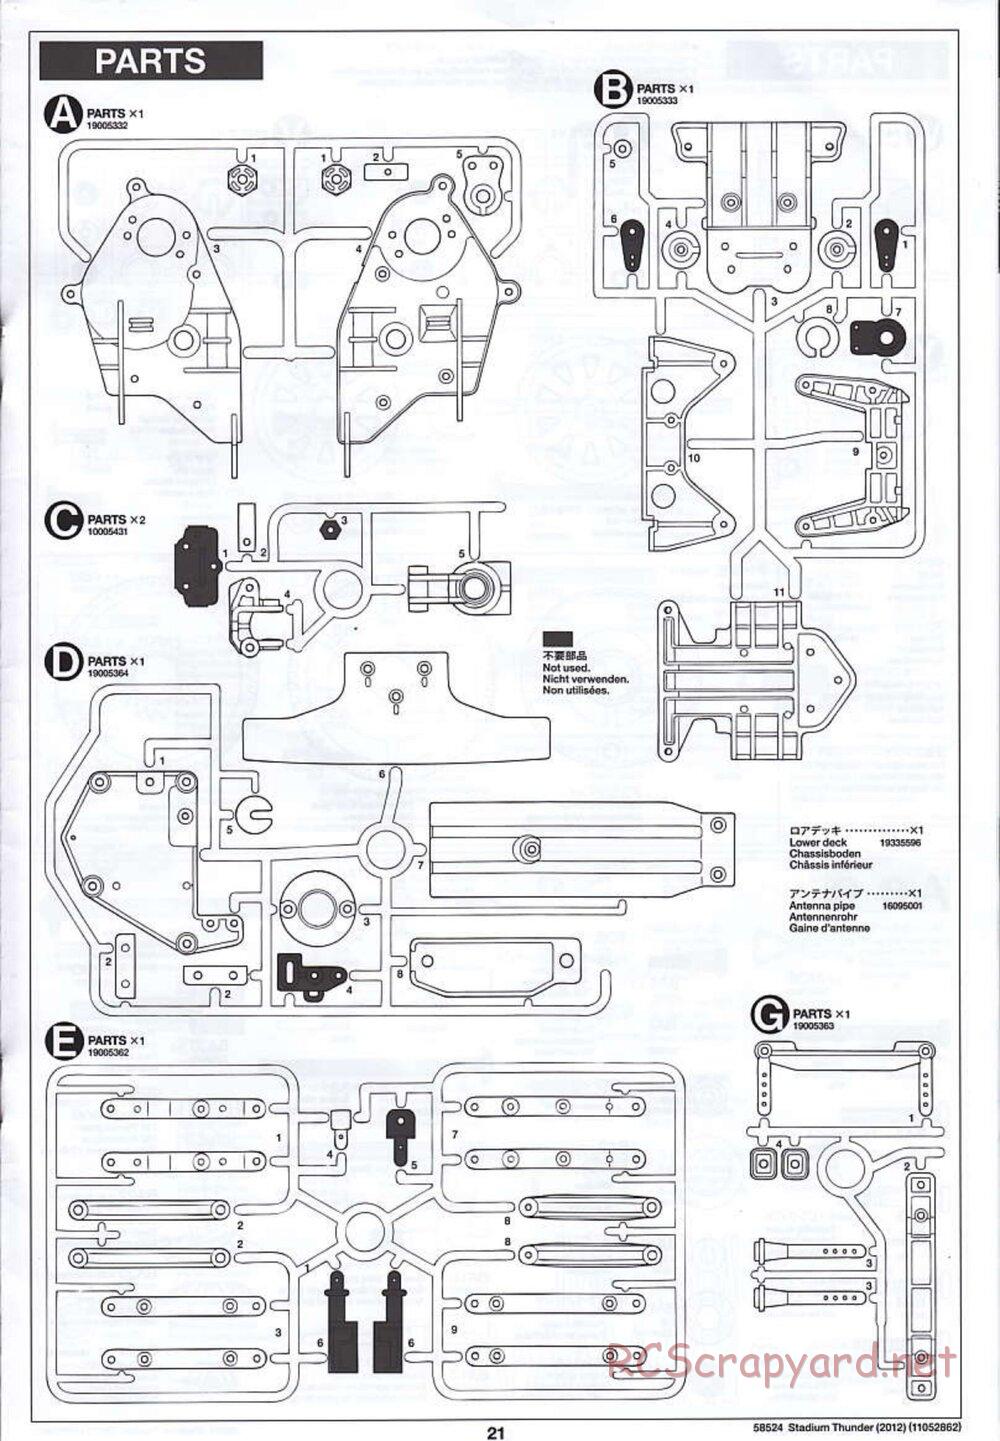 Tamiya - Stadium Thunder 2012 - FAL Chassis - Manual - Page 21